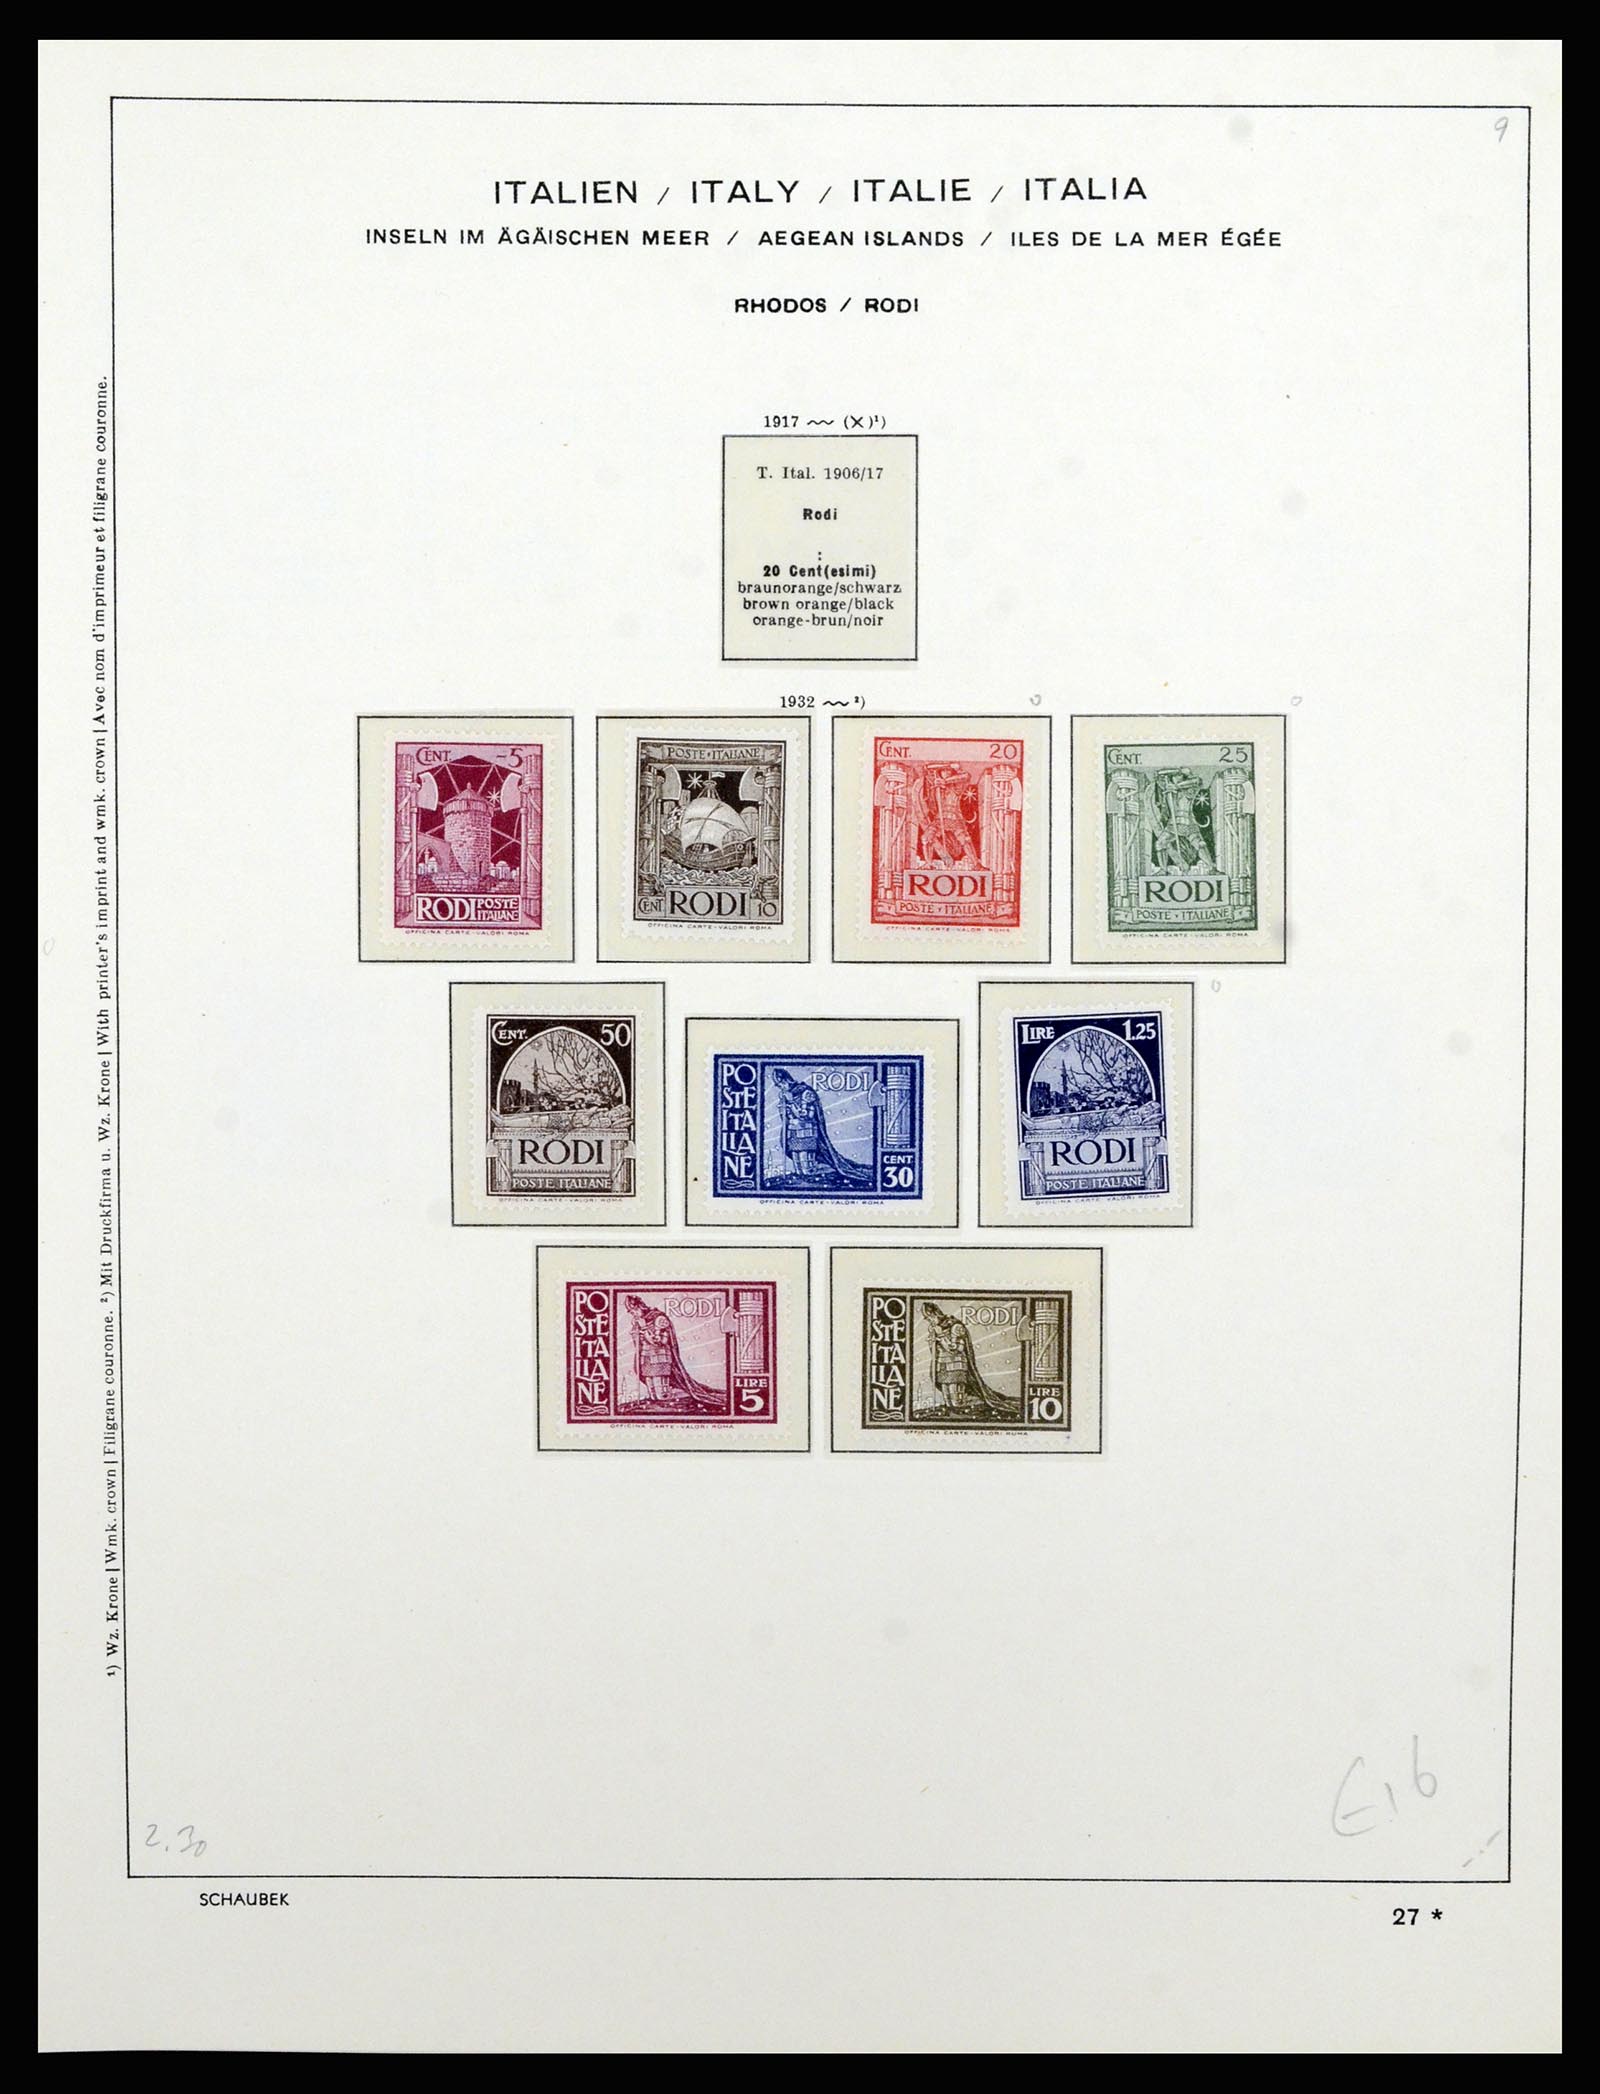 36577 054 - Stamp collection 36577 Italiaanse gebieden 1870-1940.